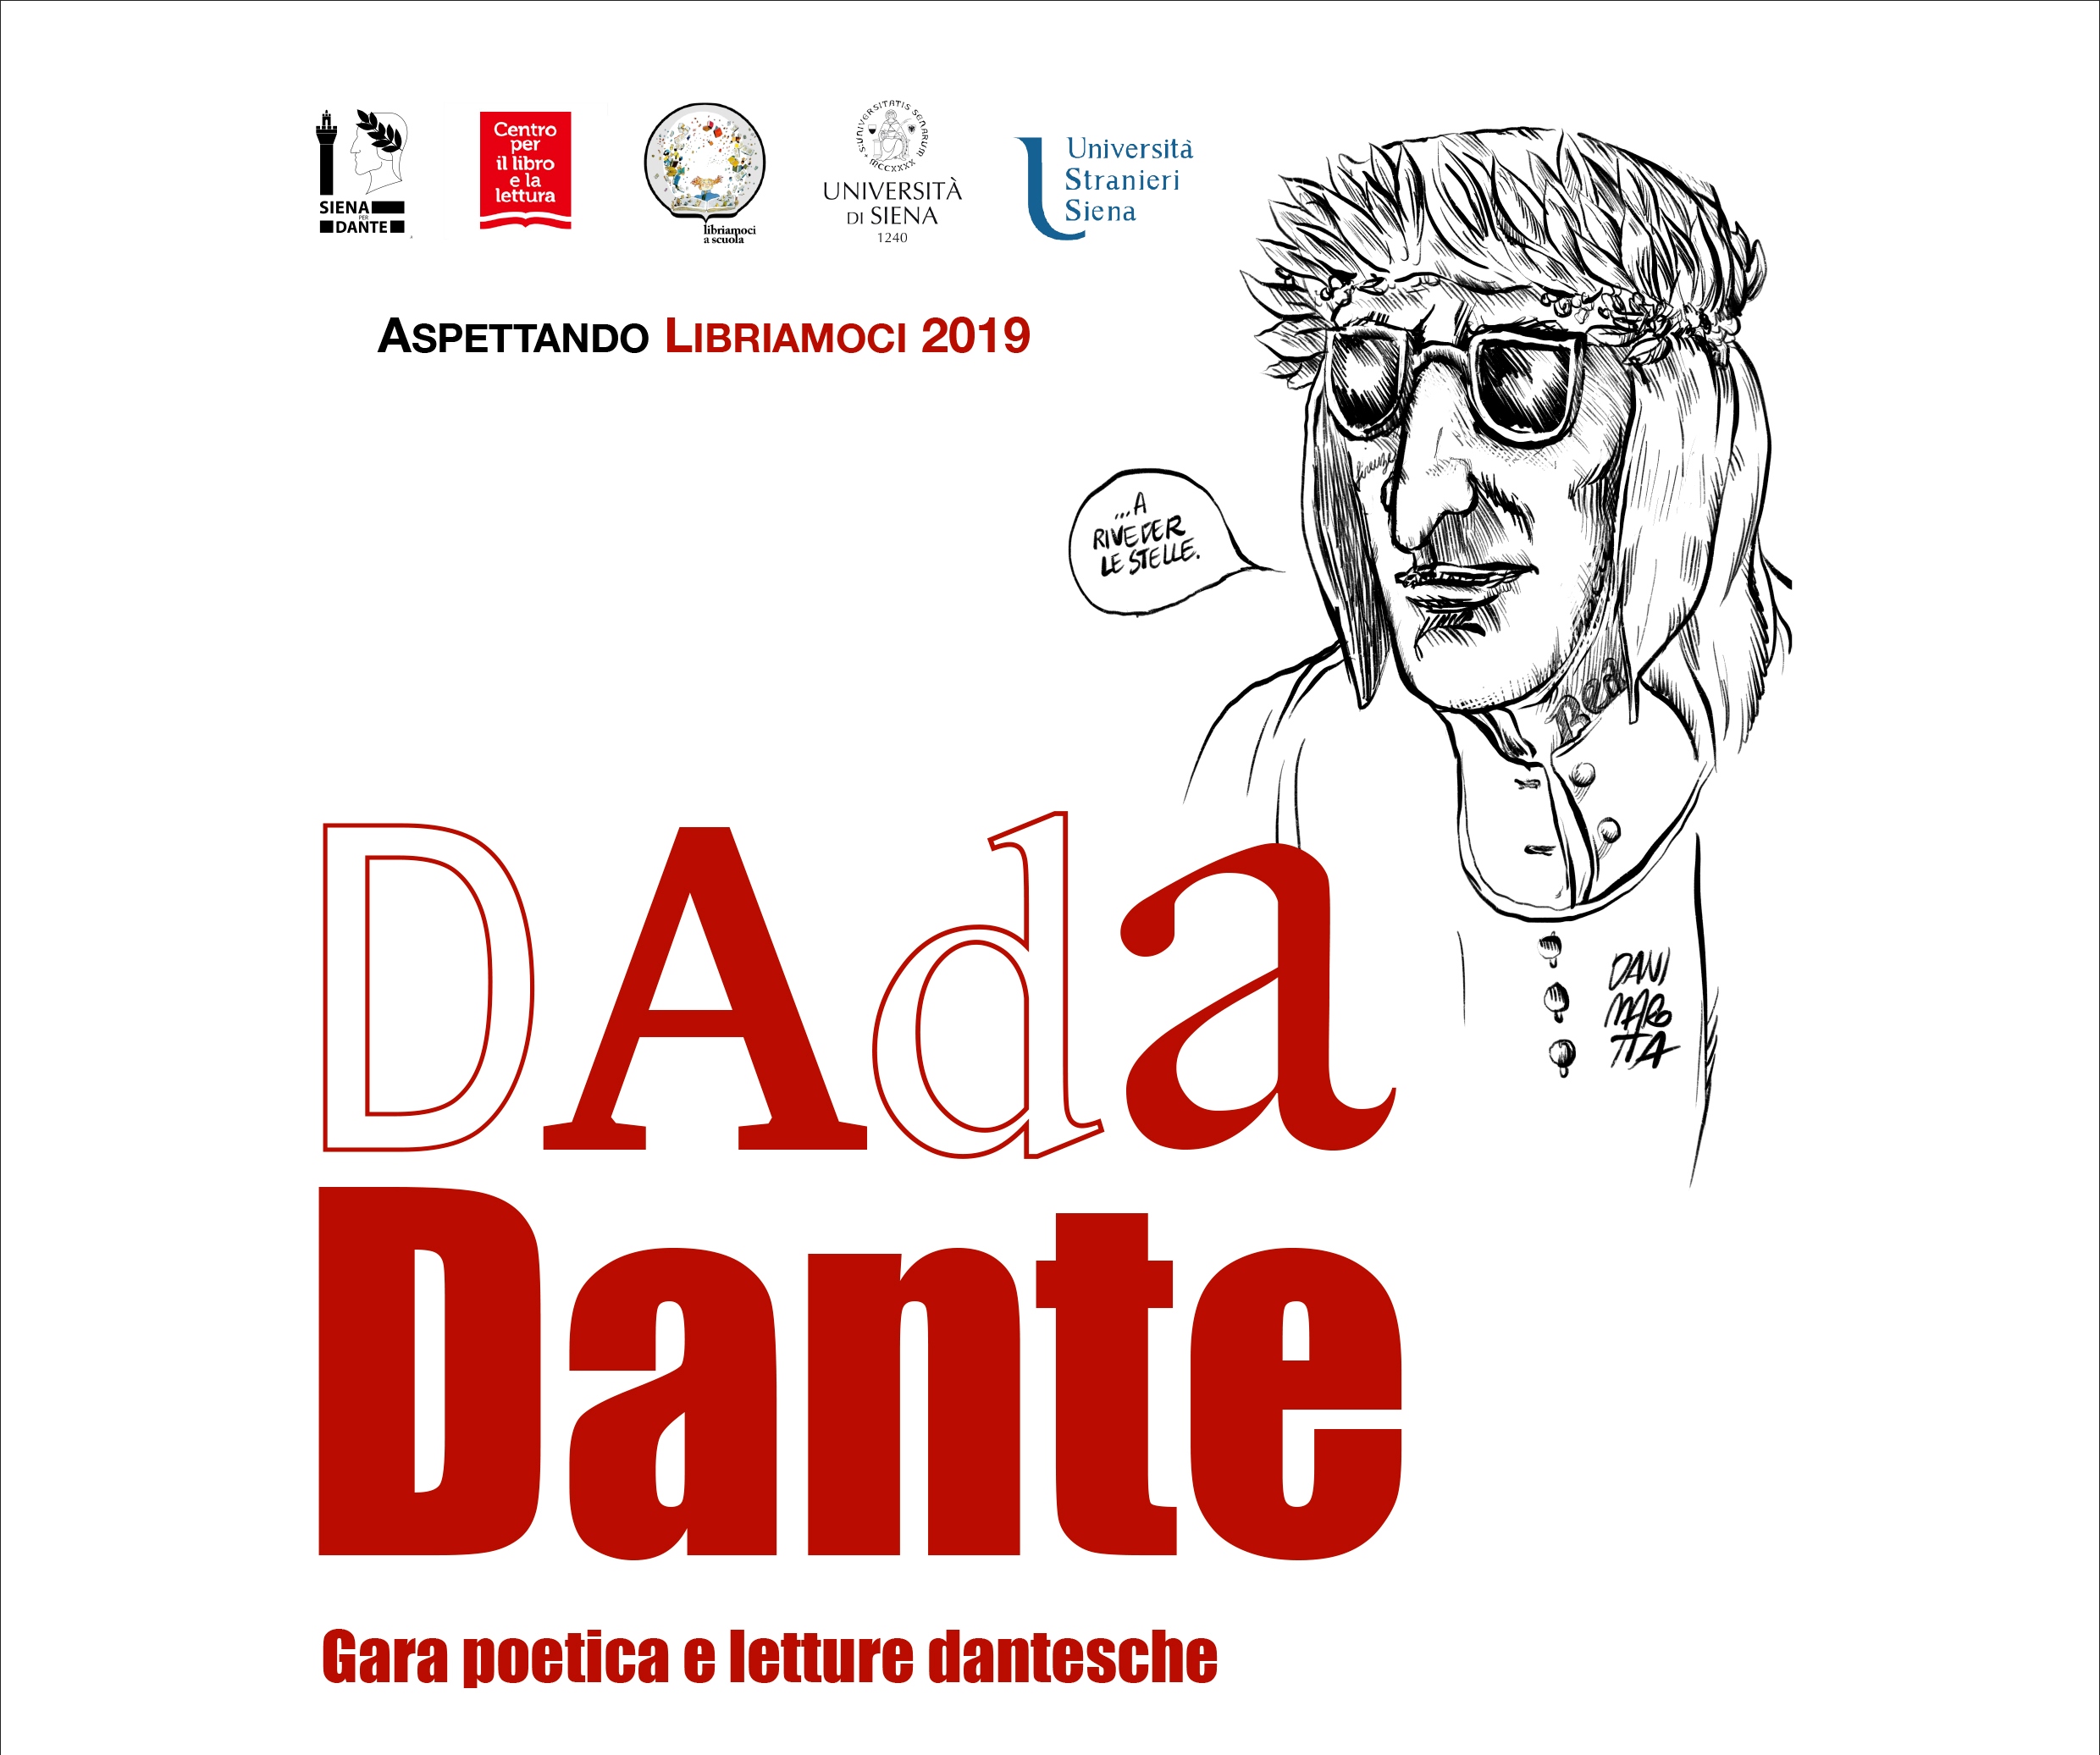 In scena lo spettacolo “Dada Dante” con attori e studenti impegnati in una gara poetica e in letture dantesche